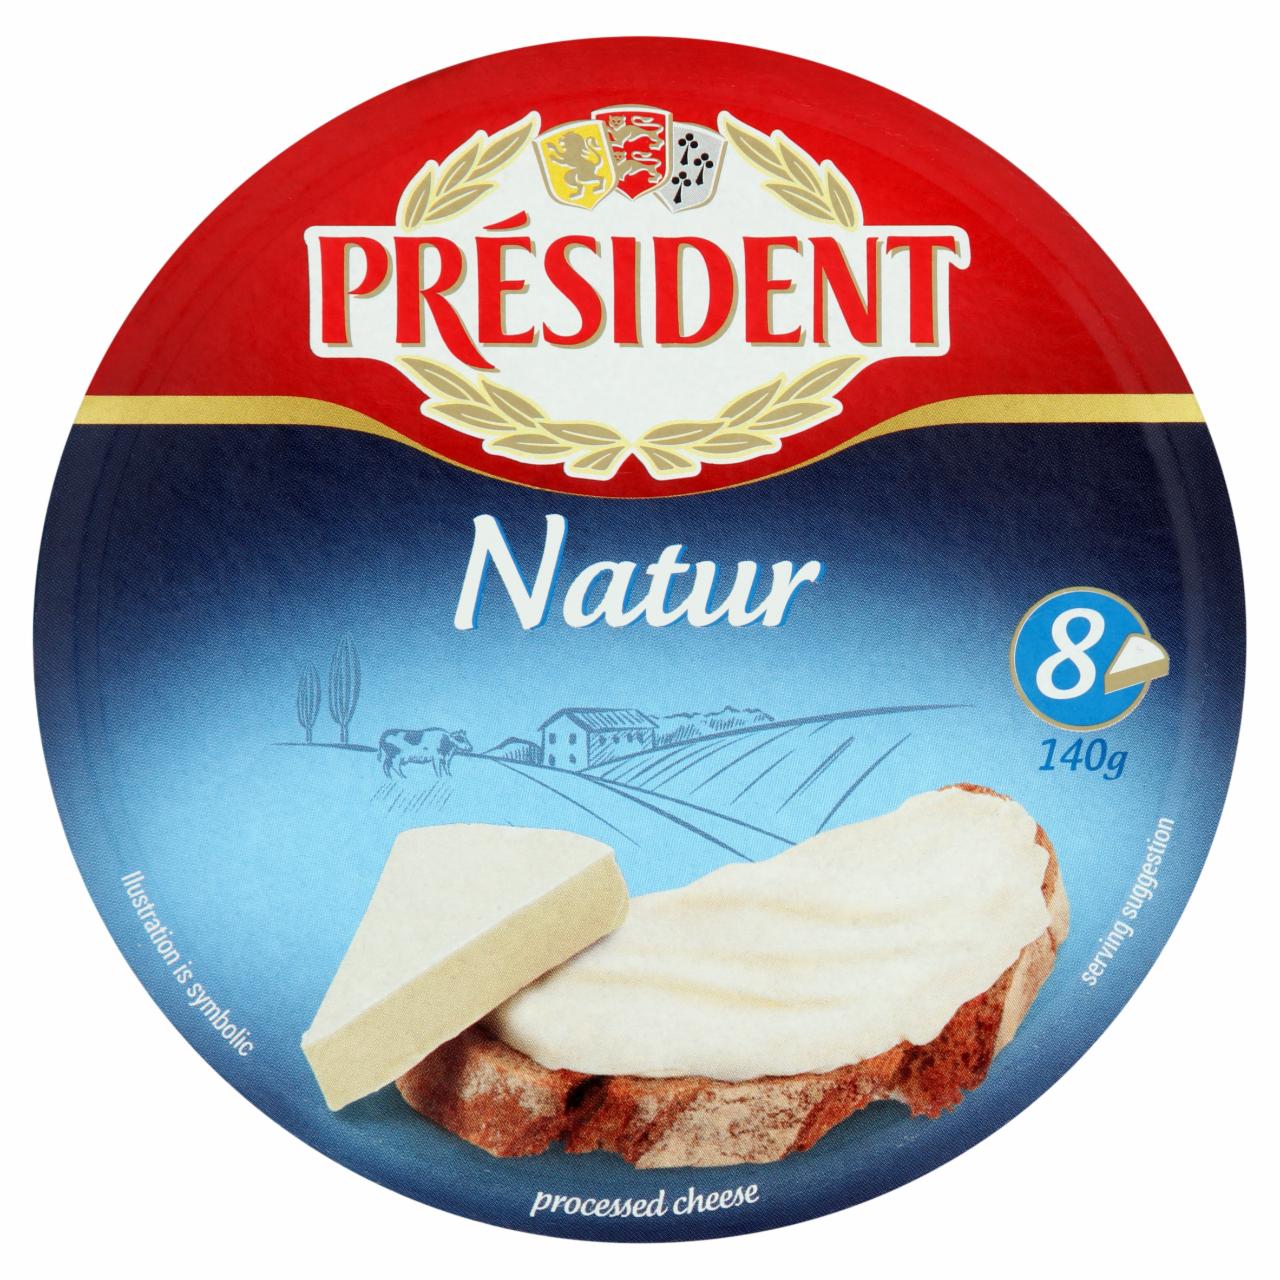 Képek - Président kenhető zsíros ömlesztett sajtkészítmény 8 db 140 g